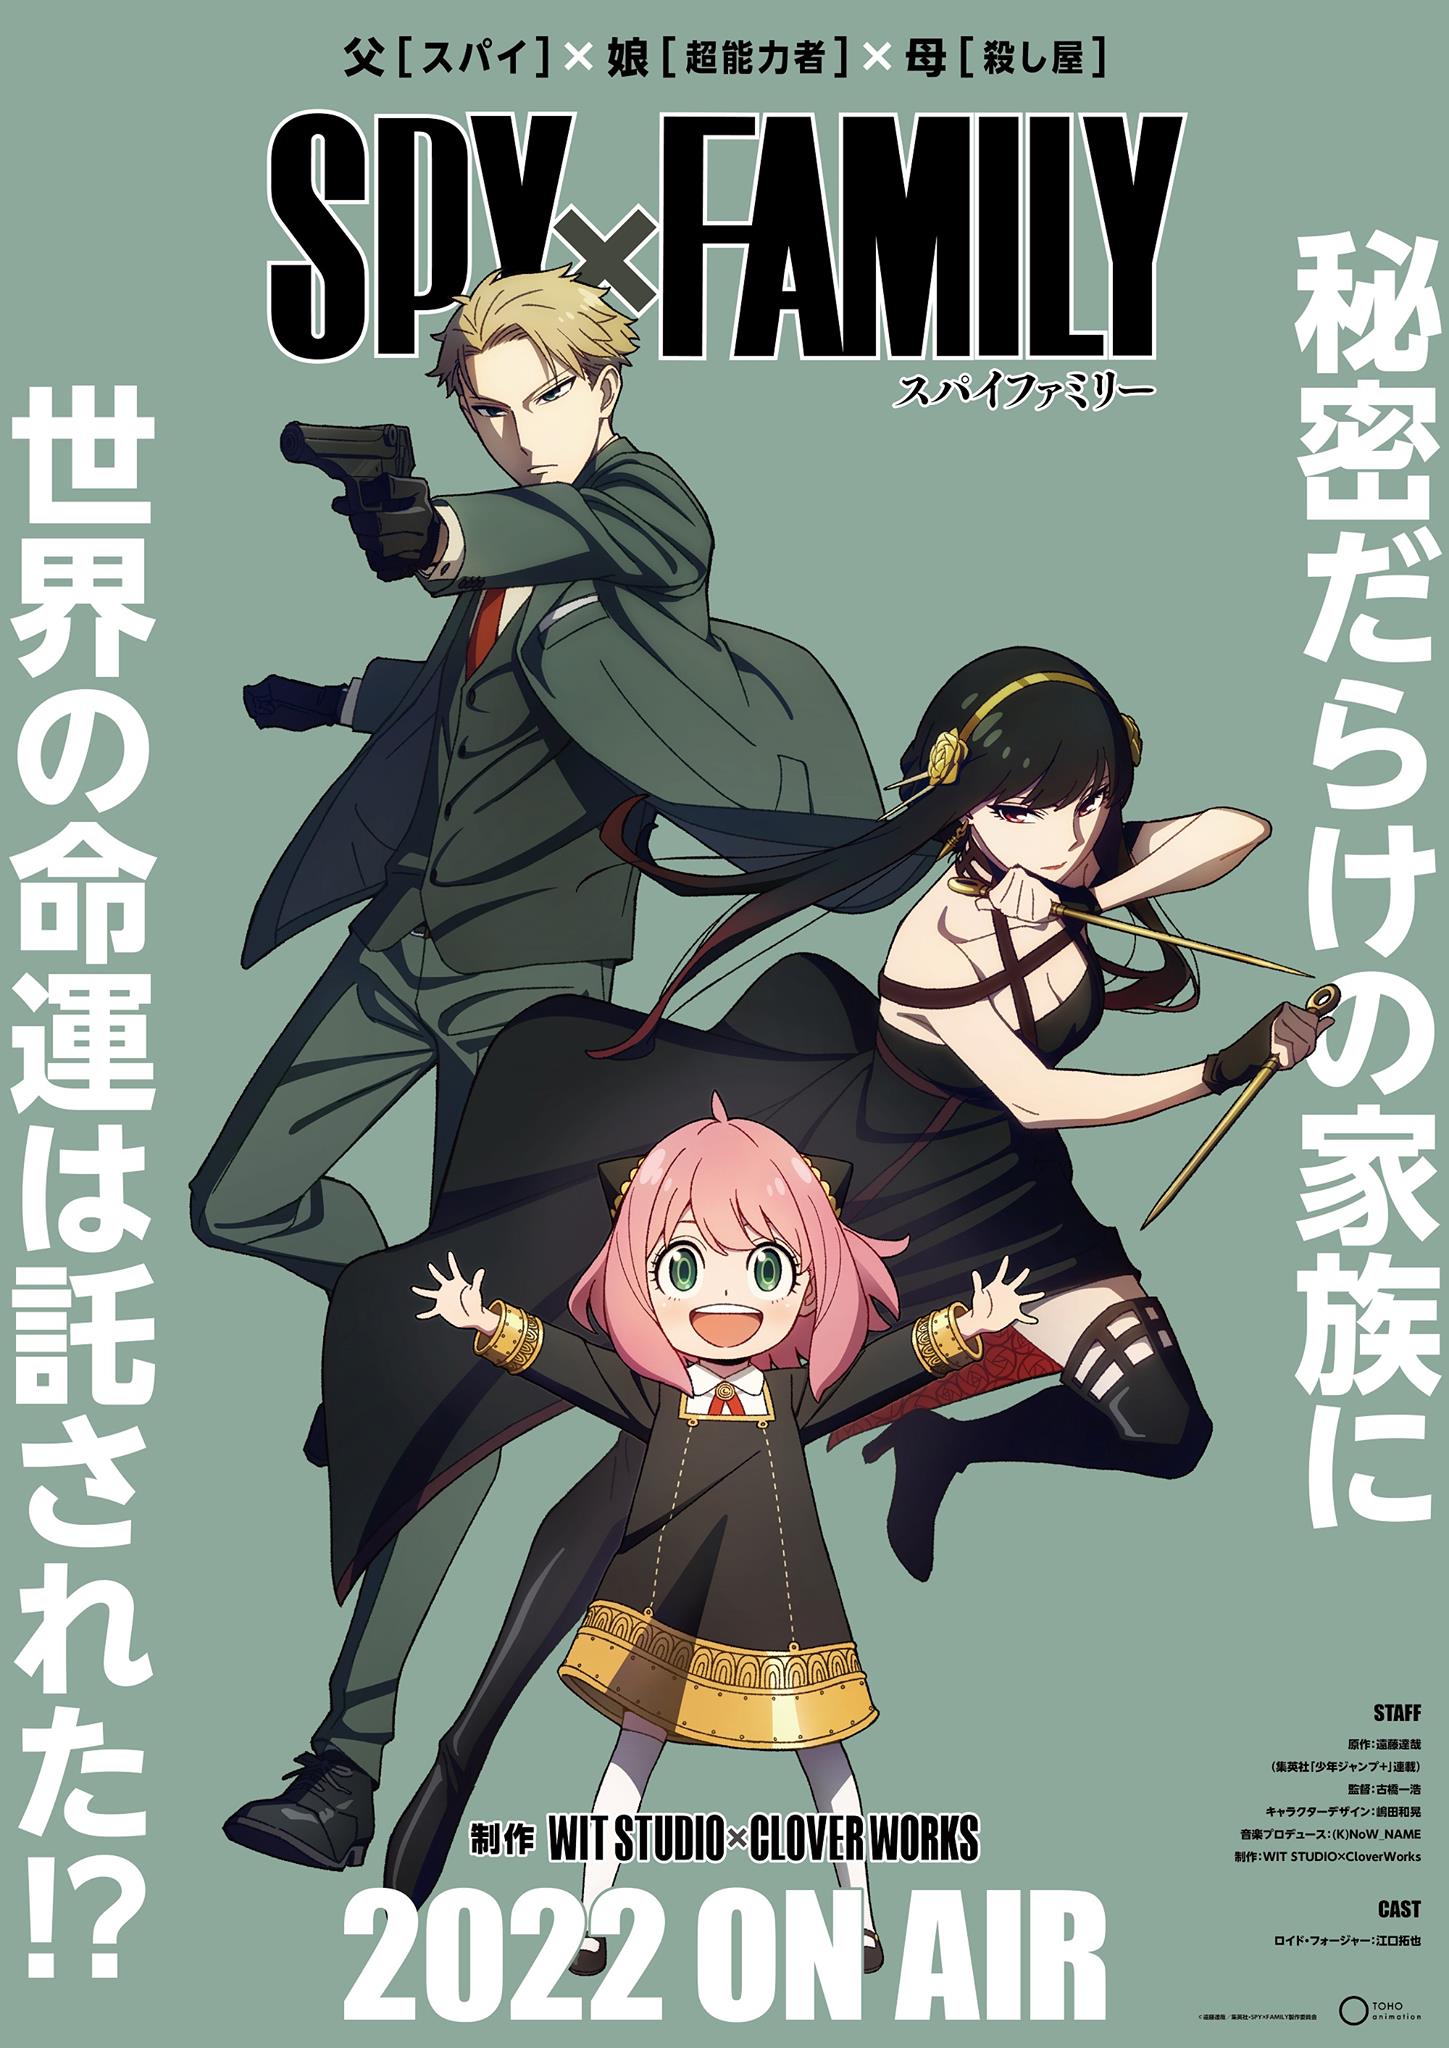 Mua SEGA - TV Anime SPY x Family - PM Figure (Yor Forger) Plain Clothes  trên Amazon Mỹ chính hãng 2023 | Giaonhan247